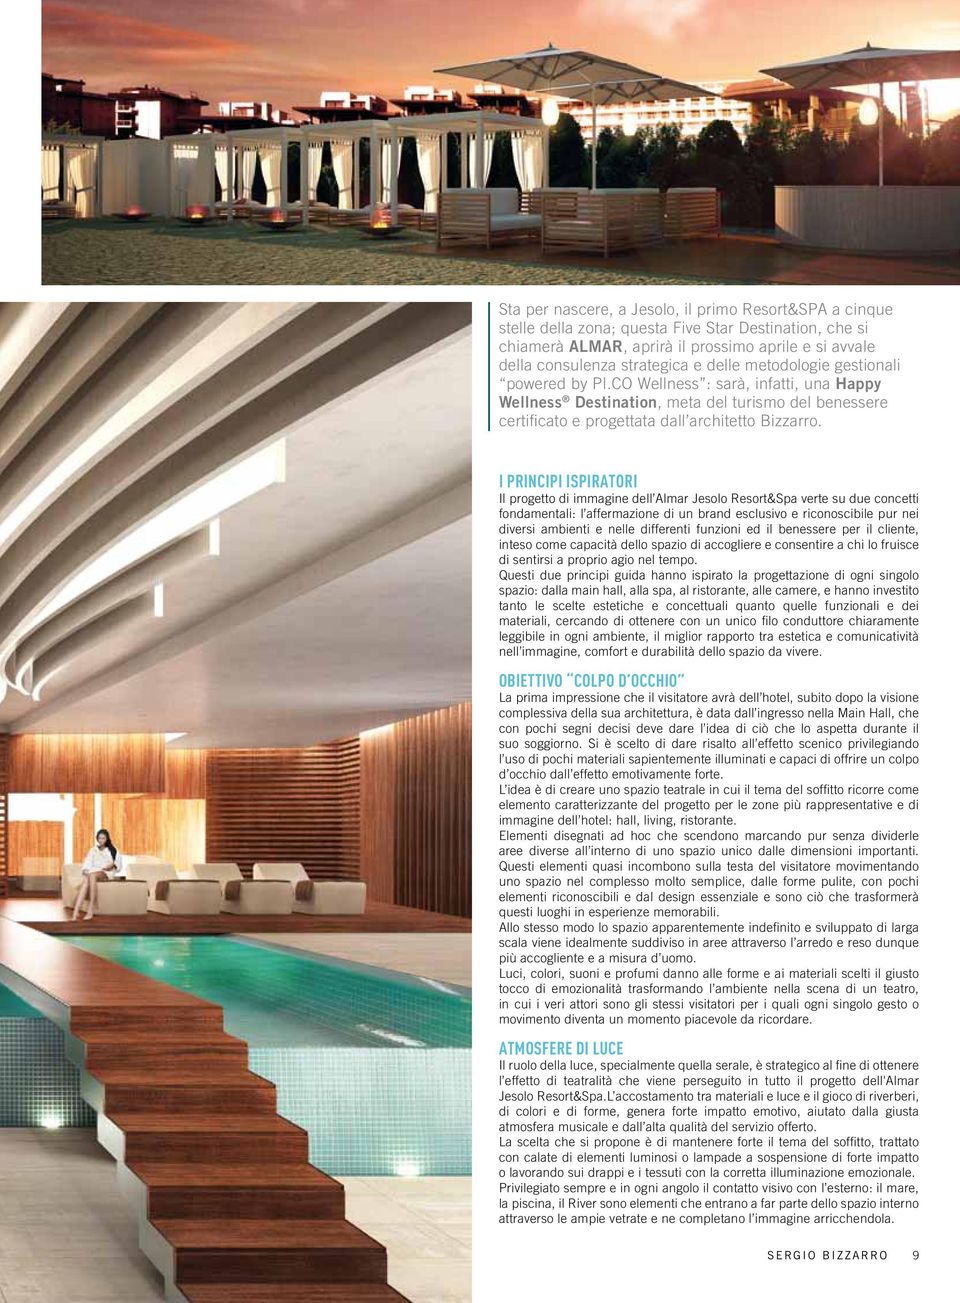 I principi ispiratori Il progetto di immagine dell Almar Jesolo Resort&Spa verte su due concetti fondamentali: l affermazione di un brand esclusivo e riconoscibile pur nei diversi ambienti e nelle